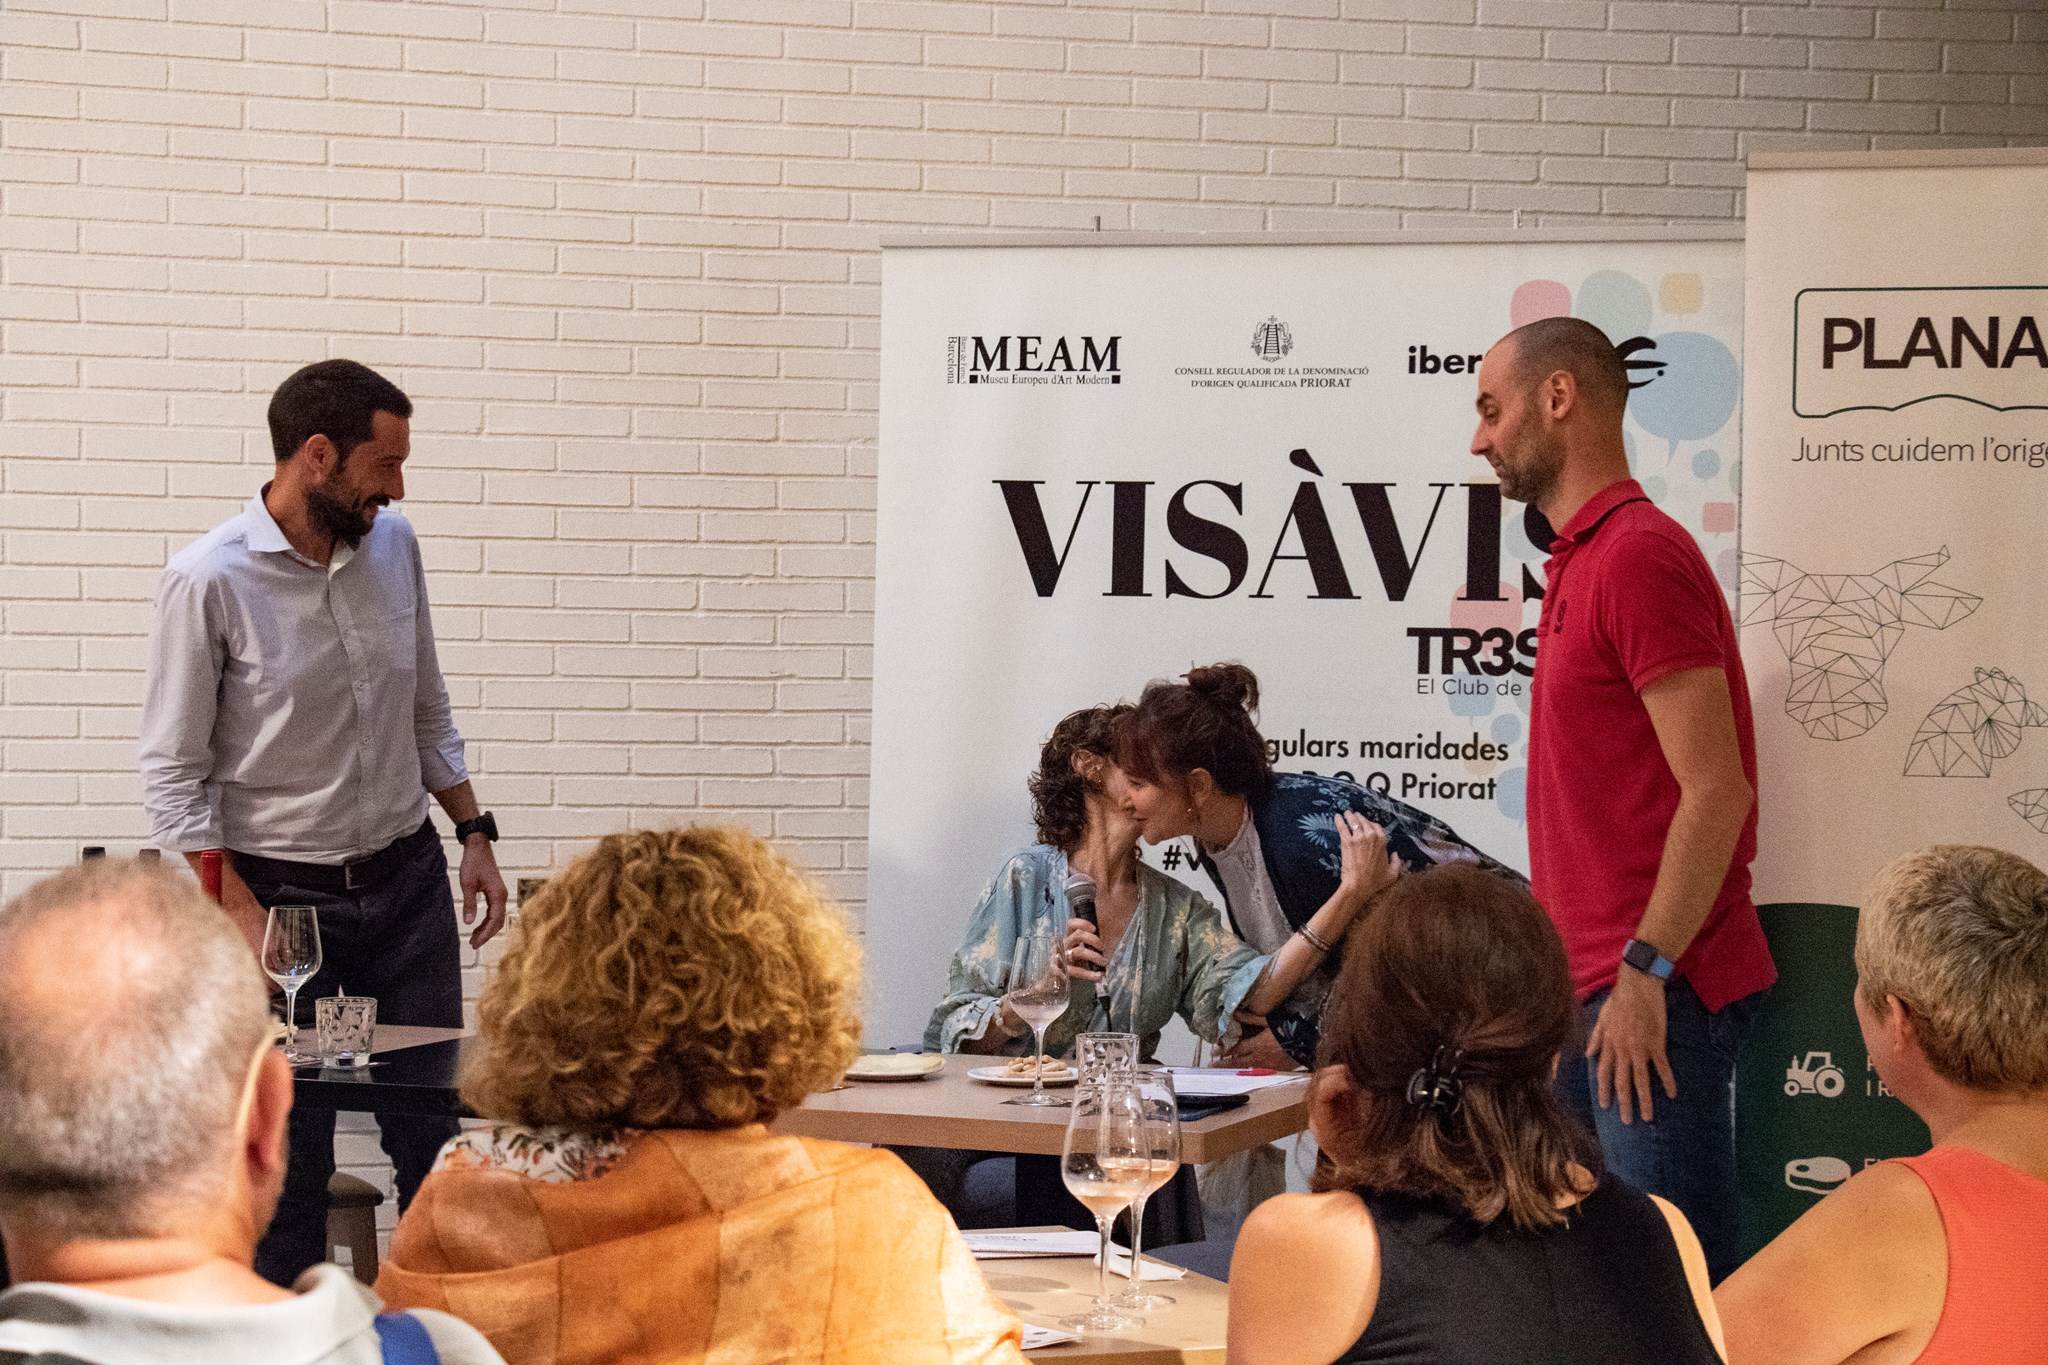 #VisàVisTR3SC amb Marta Pérez i Mamen Duch (T de Teatre) i el celler Scala Dei